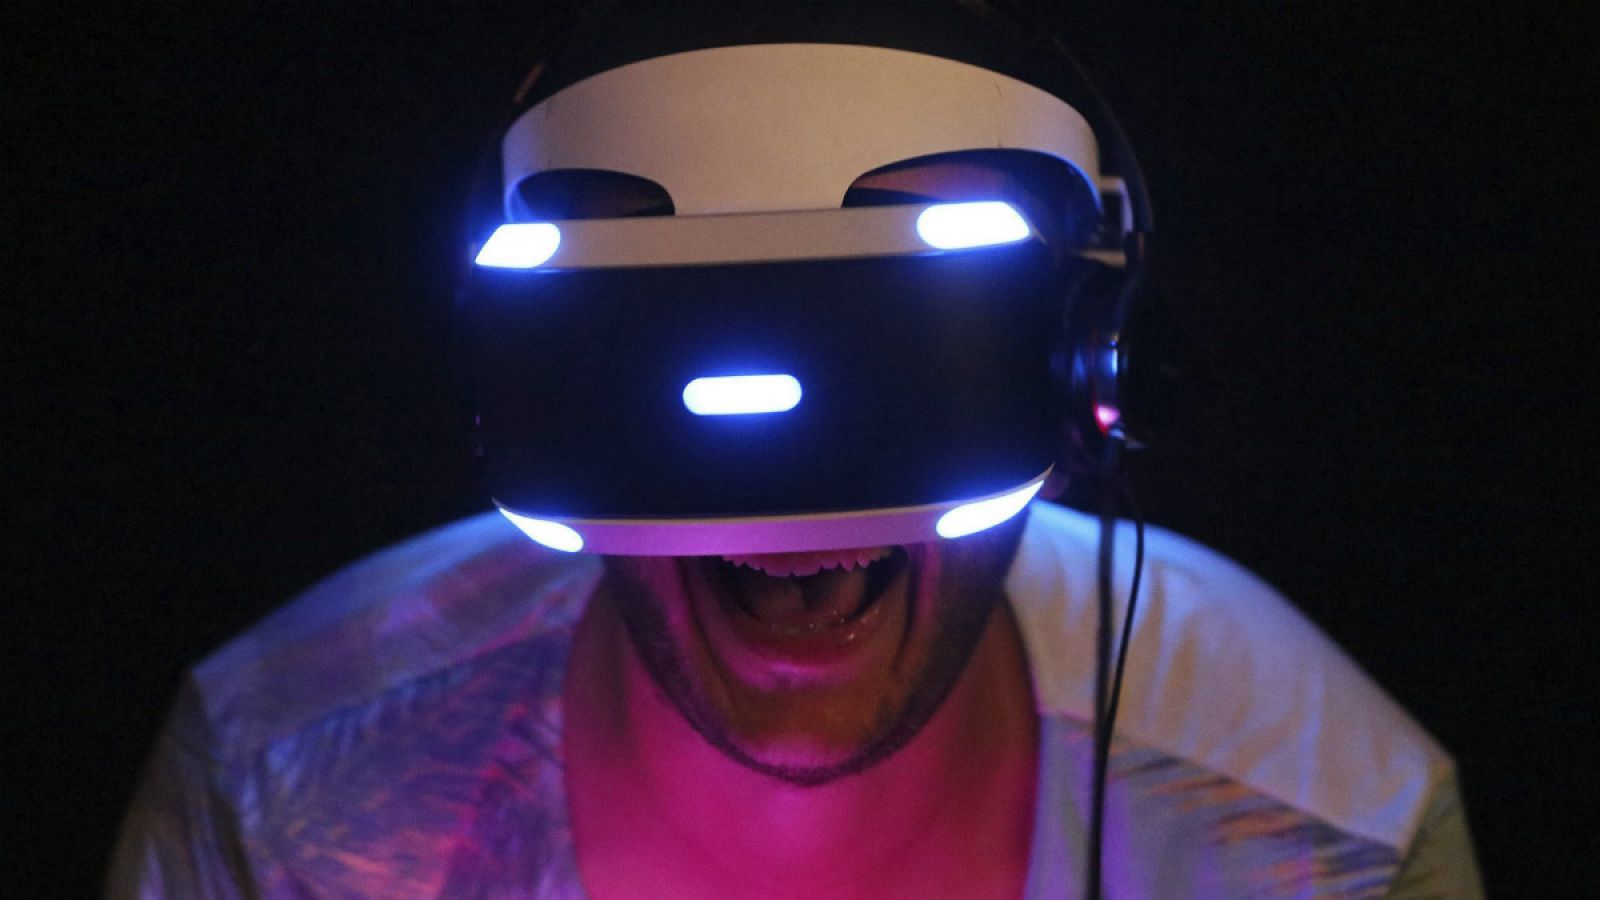 Un visitante de la Gamescom 2015 de Colonia probando el visor de realidad virtual de Sony, Morpheus VR.